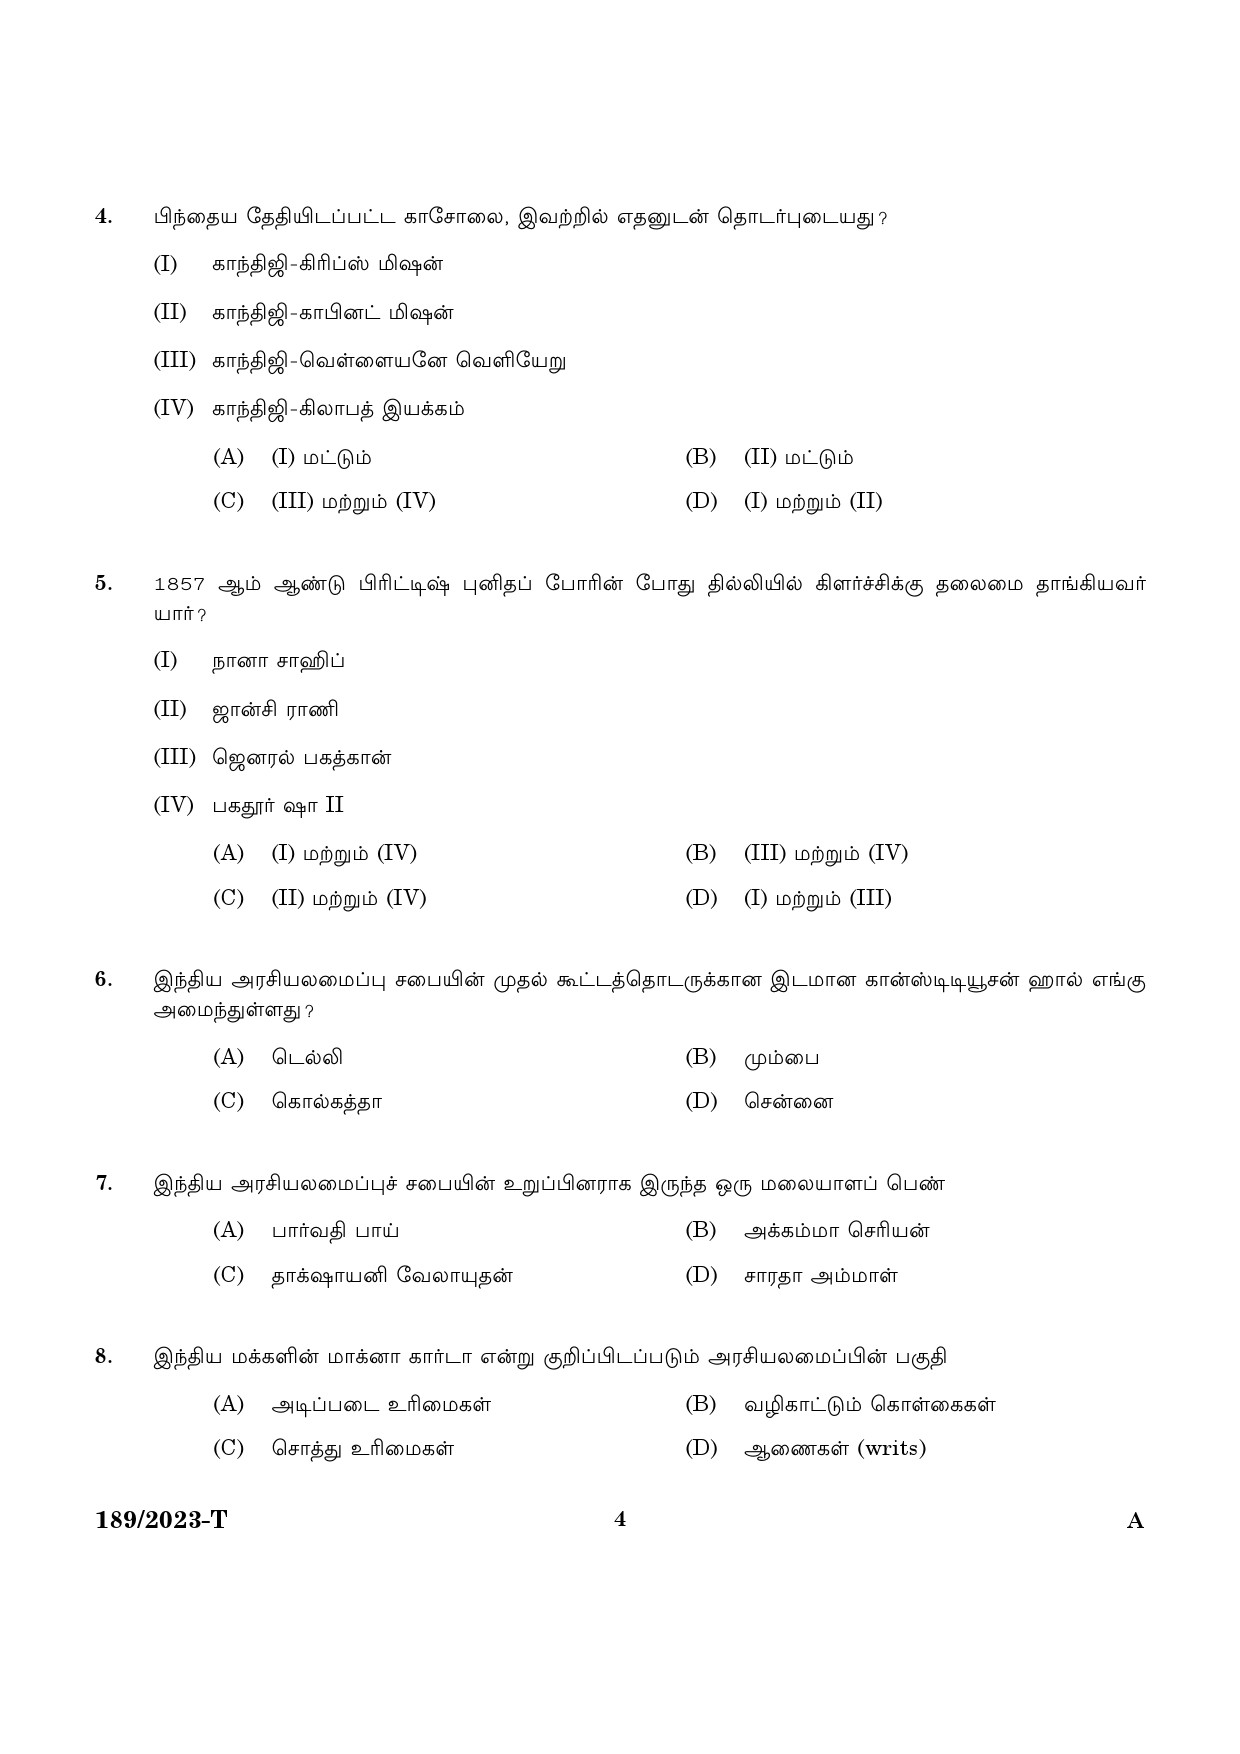 KPSC LGS Tamil Exam 2023 Code 1892023 T 2